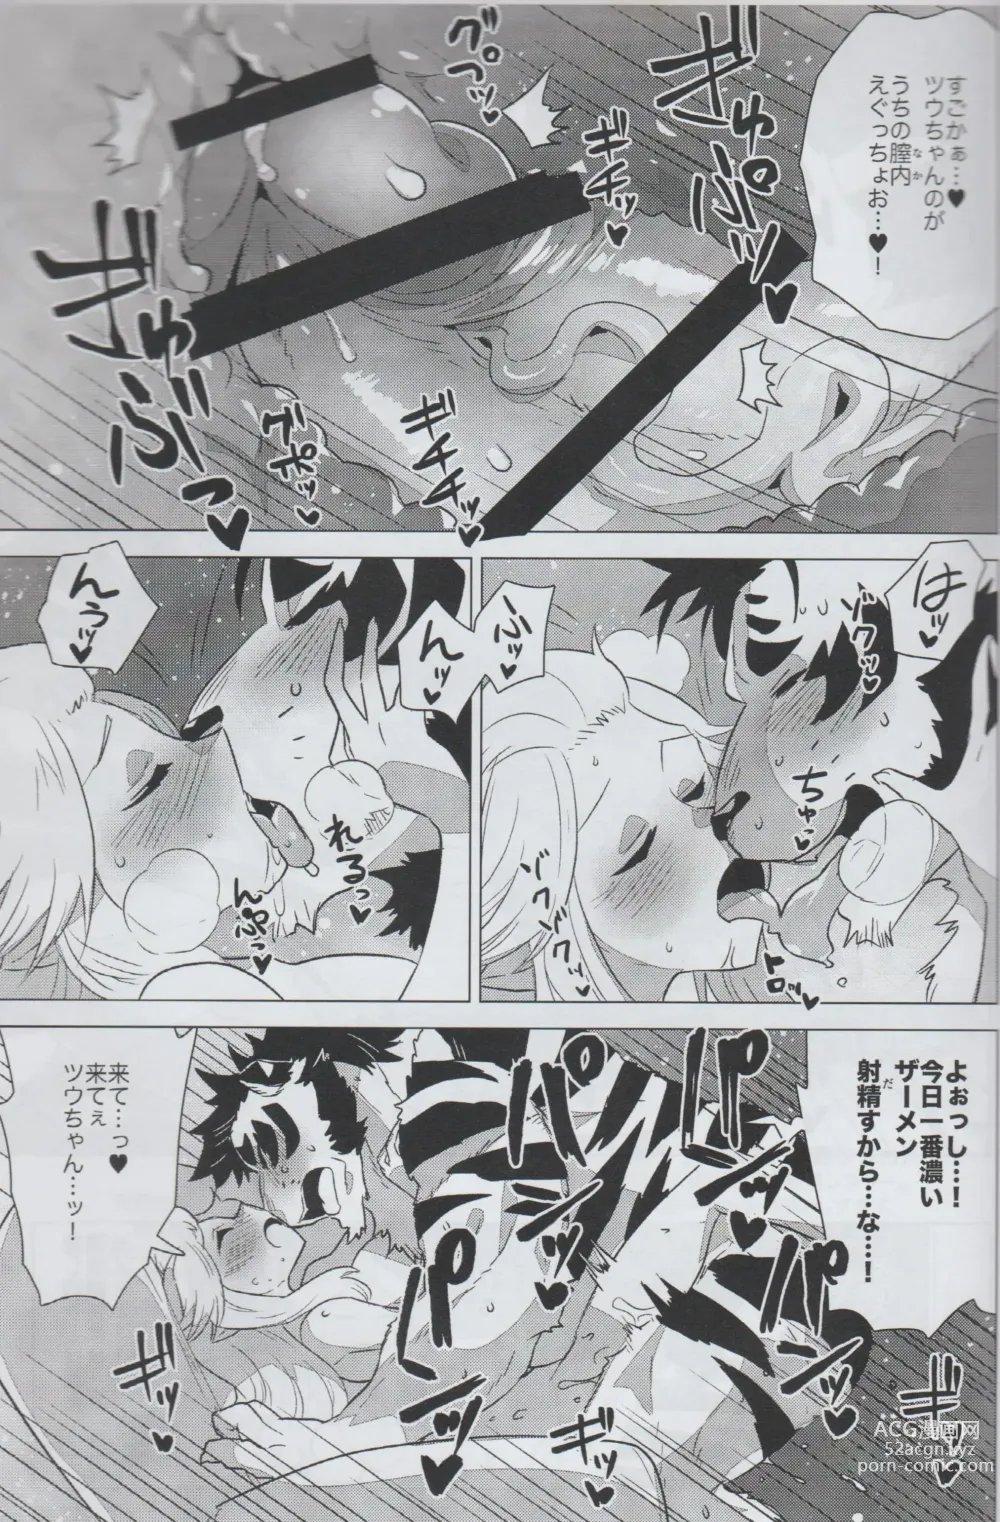 Page 16 of doujinshi Mihoshi Ginza Shopping Street Kaihoushi vol. 05